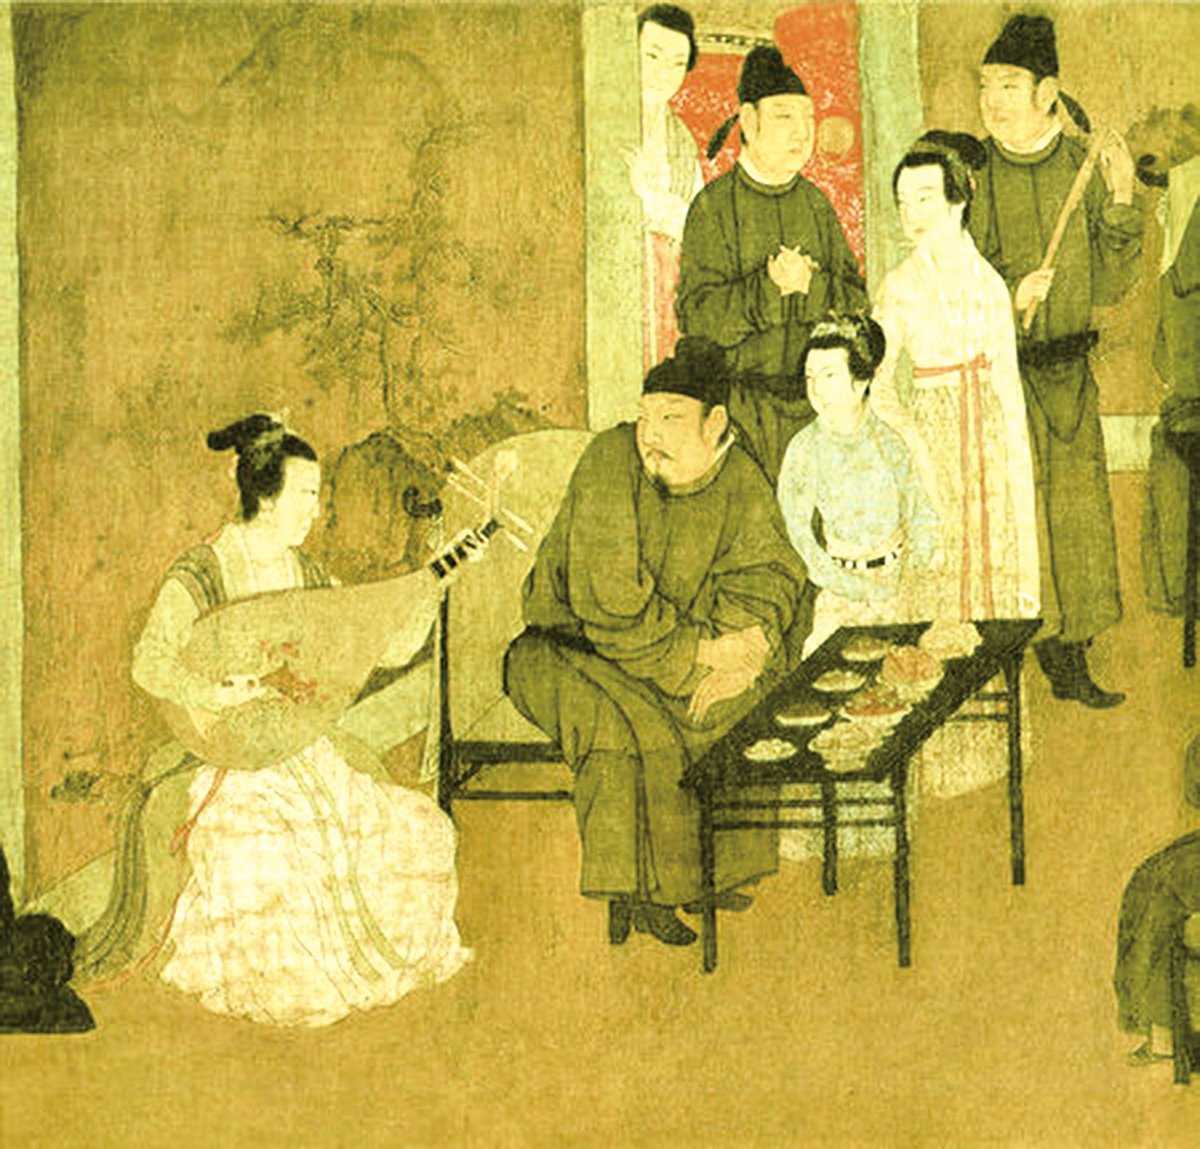 Một phần bức “Hàn hi tái dạ yến đồ” của Cố Hoành Trung thời Nam Đường, Ngũ Đại Thập Quốc. (Ảnh: Tài sản công)